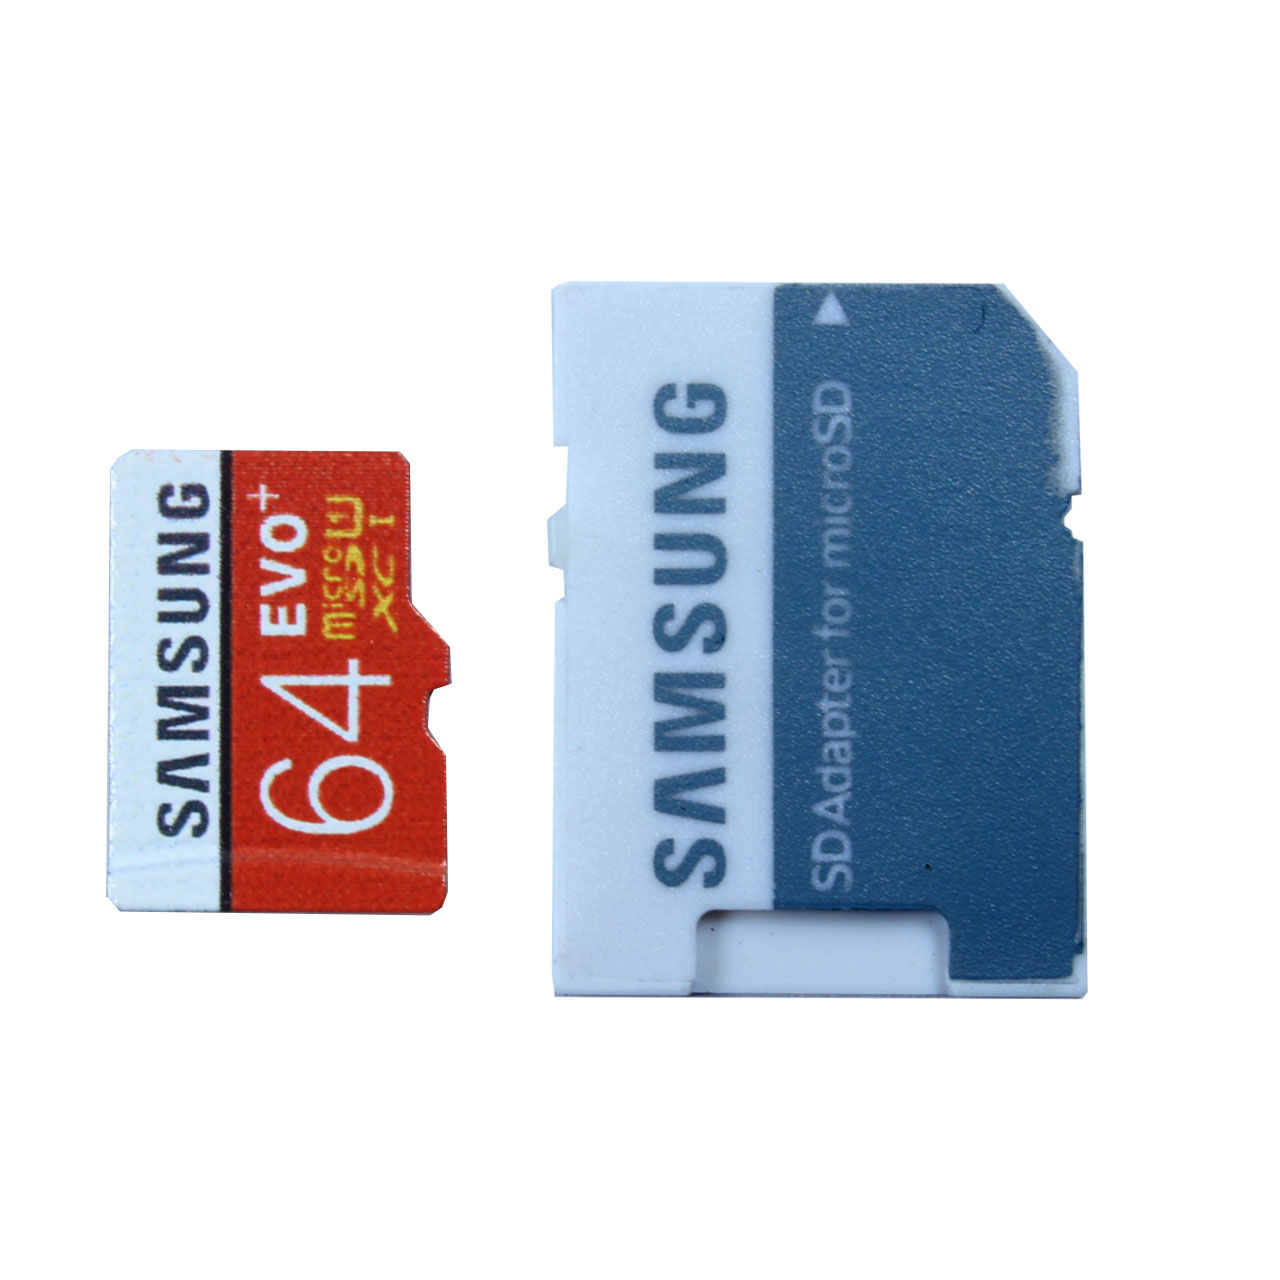 کارت حافظه microSDXC مدل Evo Plus کلاس 10 استاندارد UHS-I U1 سرعت 100MBps ظرفیت 64 گیگابایت به همراه آداپتور SD